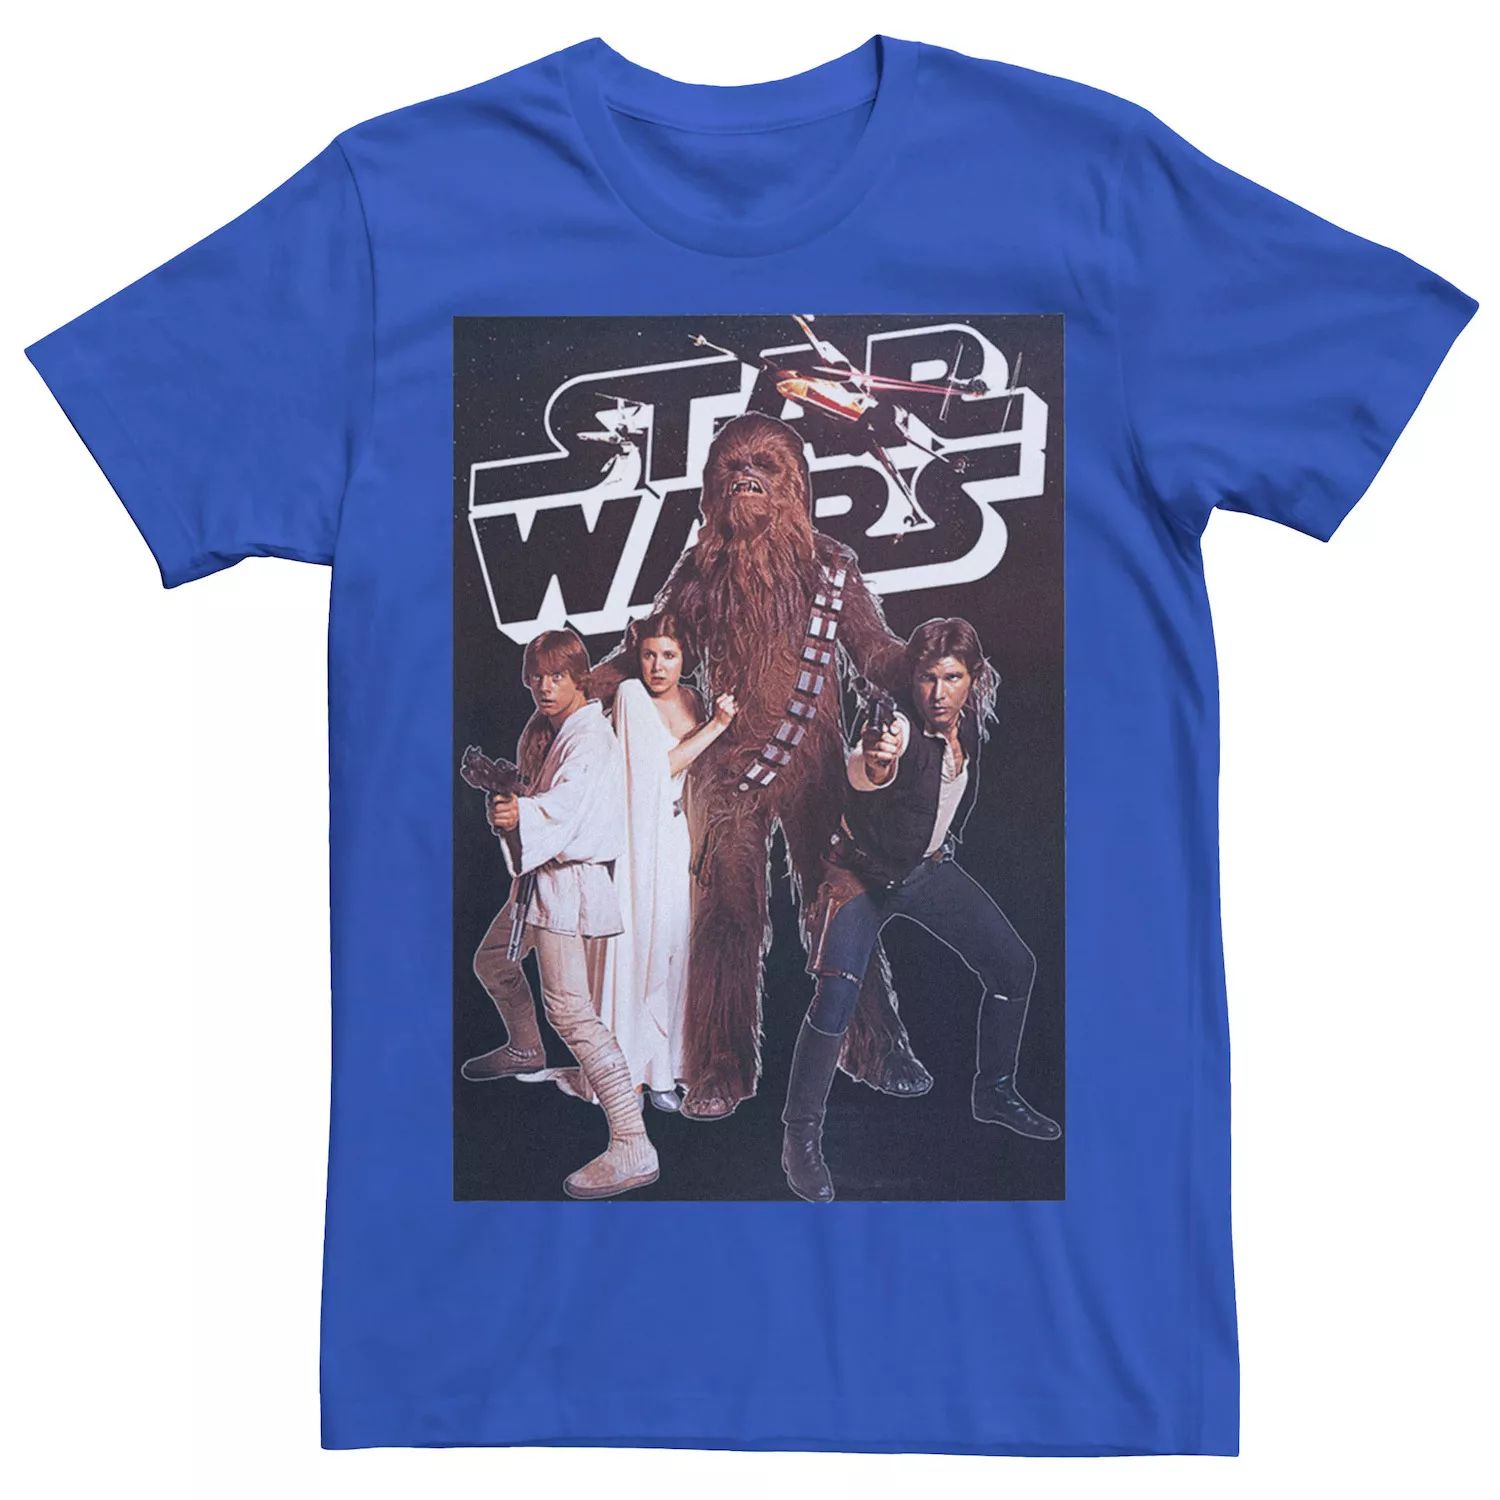 Мужская винтажная футболка с плакатом для группы Star Wars h top royal star